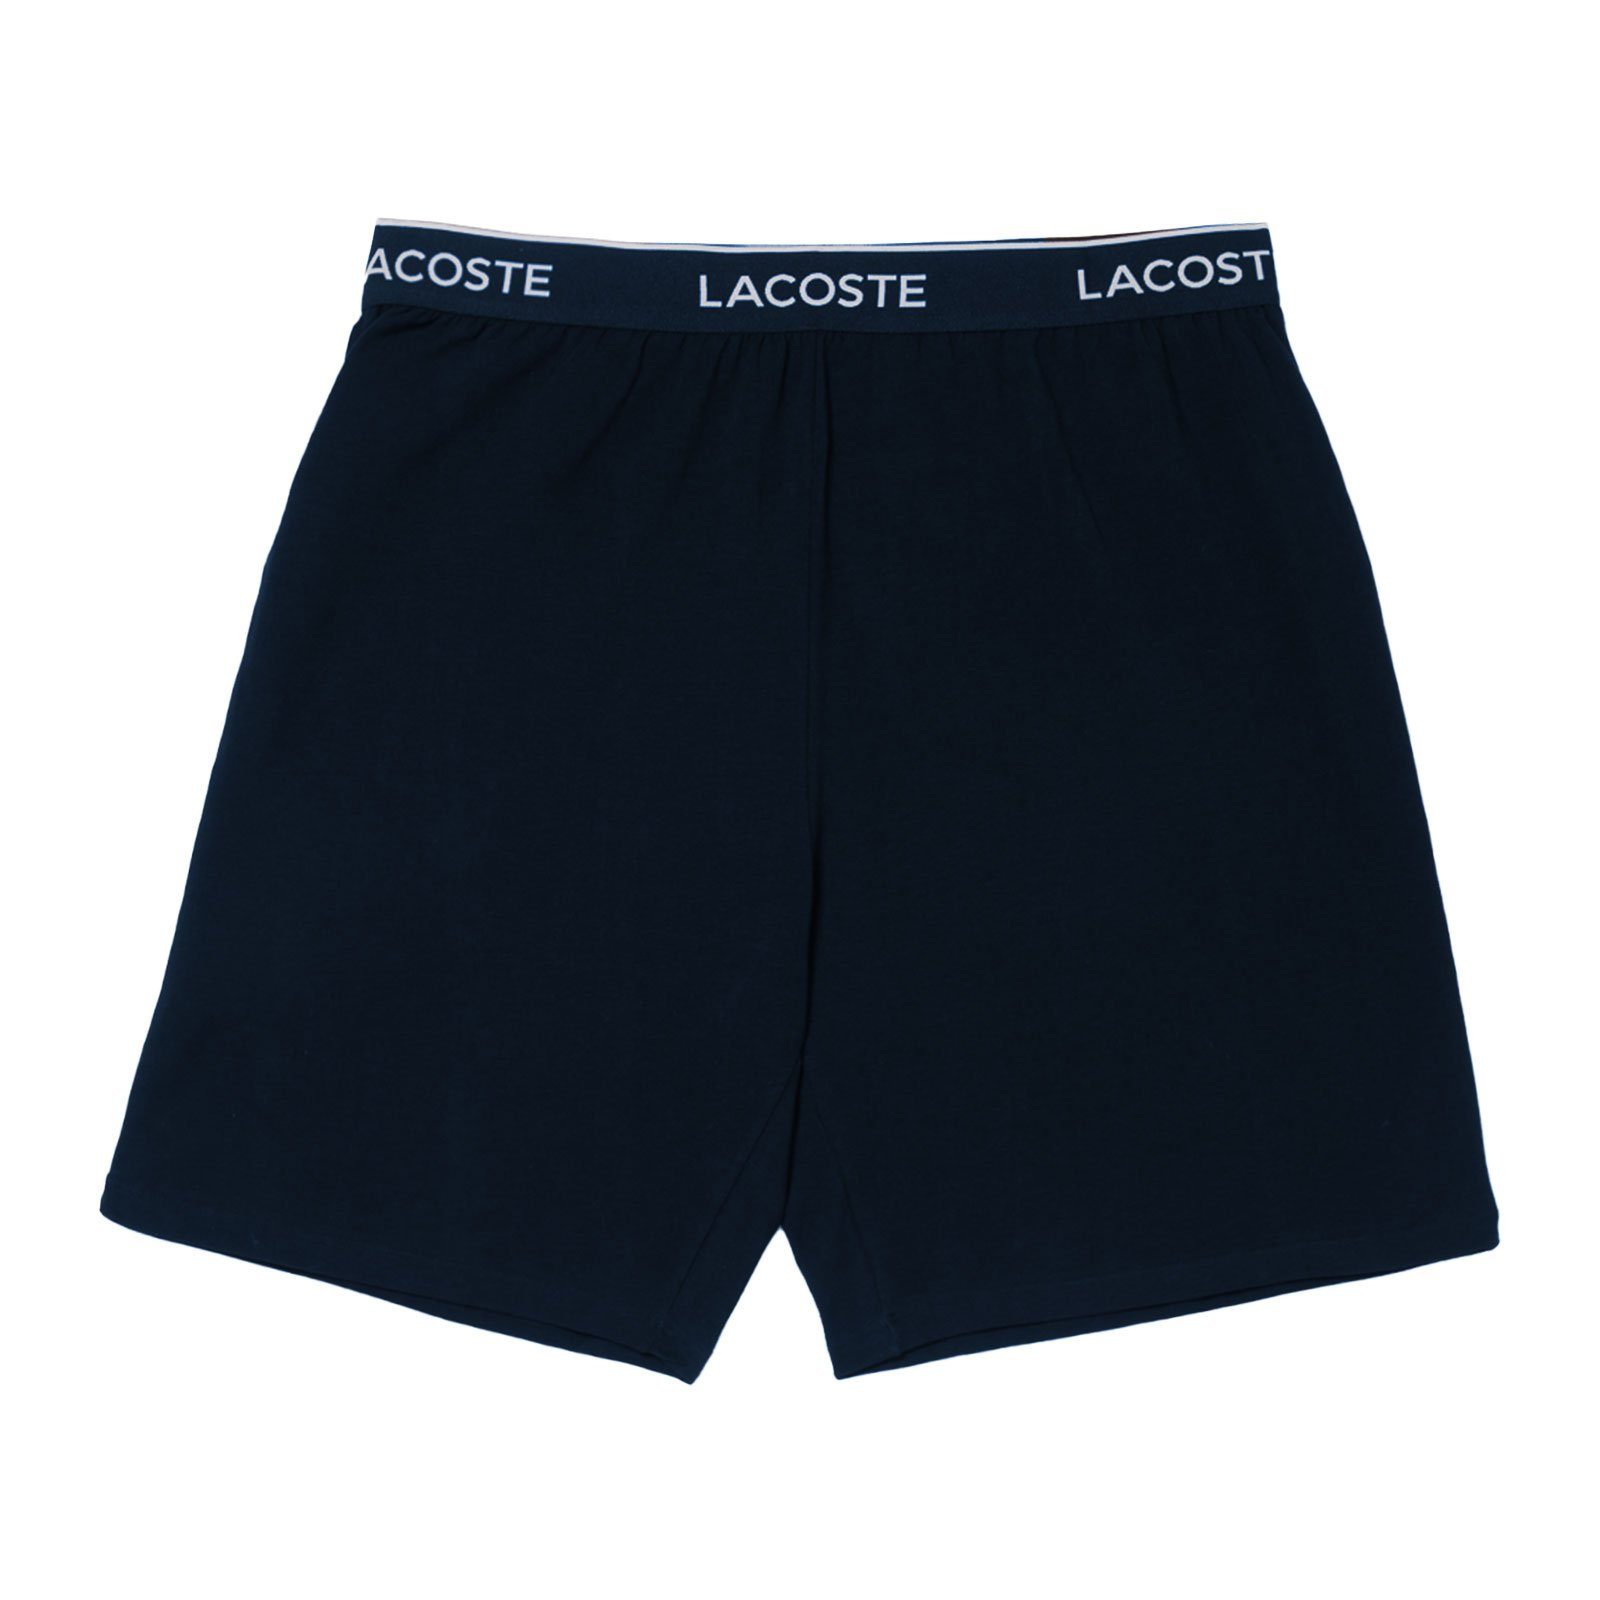 grenzenlos Lacoste Pyjamashorts Loungewear Shorts mit Markenschriftzug 166 umlaufenden bleu marine